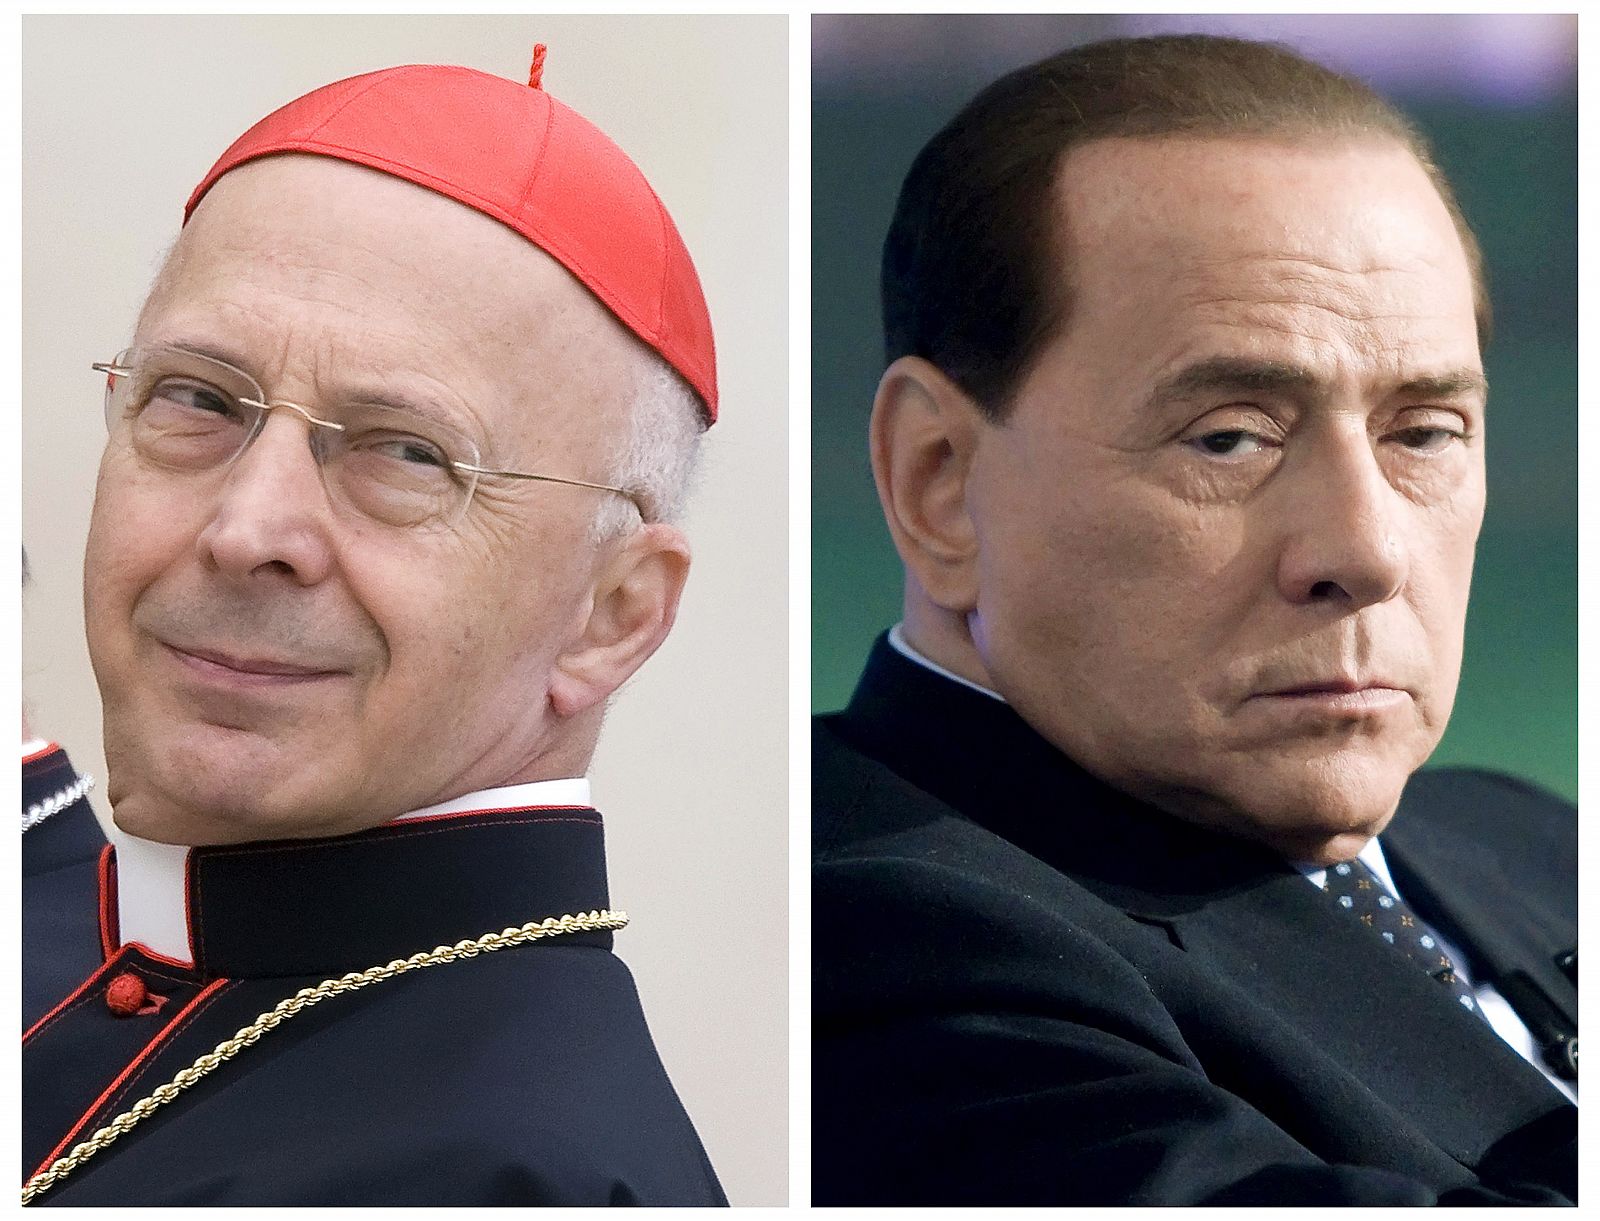 El presidente de la Conferencia Episcopal italiana ha llamado la atención sobre los comportamientos "licenciosos" del primer ministro italiano, Silvio Berlusconi.